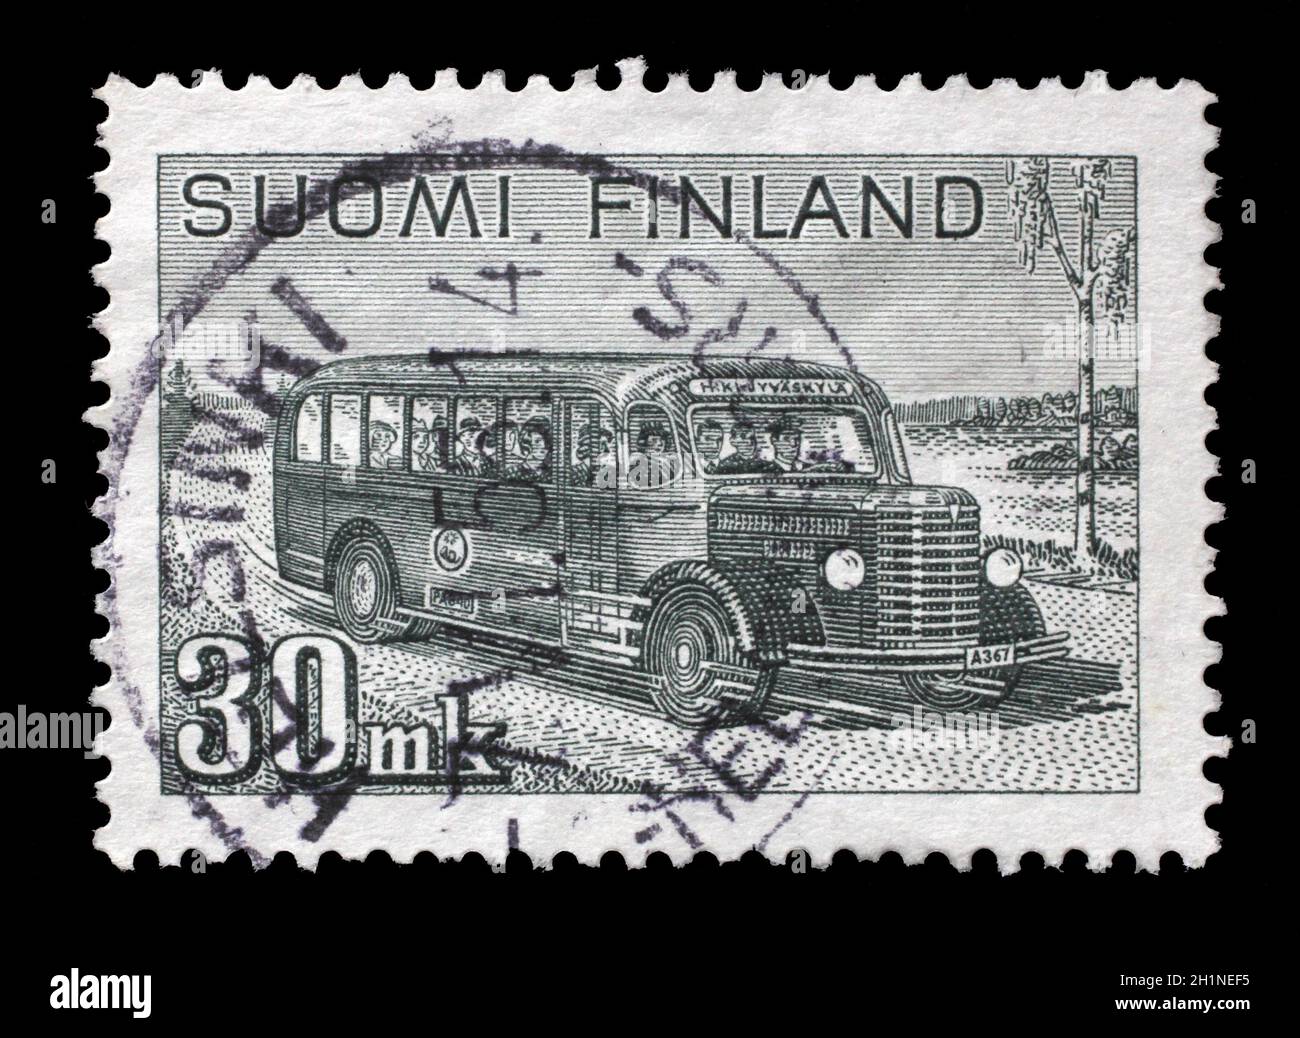 Stempel gedruckt in Finnland zeigt retro Postauto mit Passagieren auf Landstraße, Serie 'Mail Van', circa 1946. Stockfoto